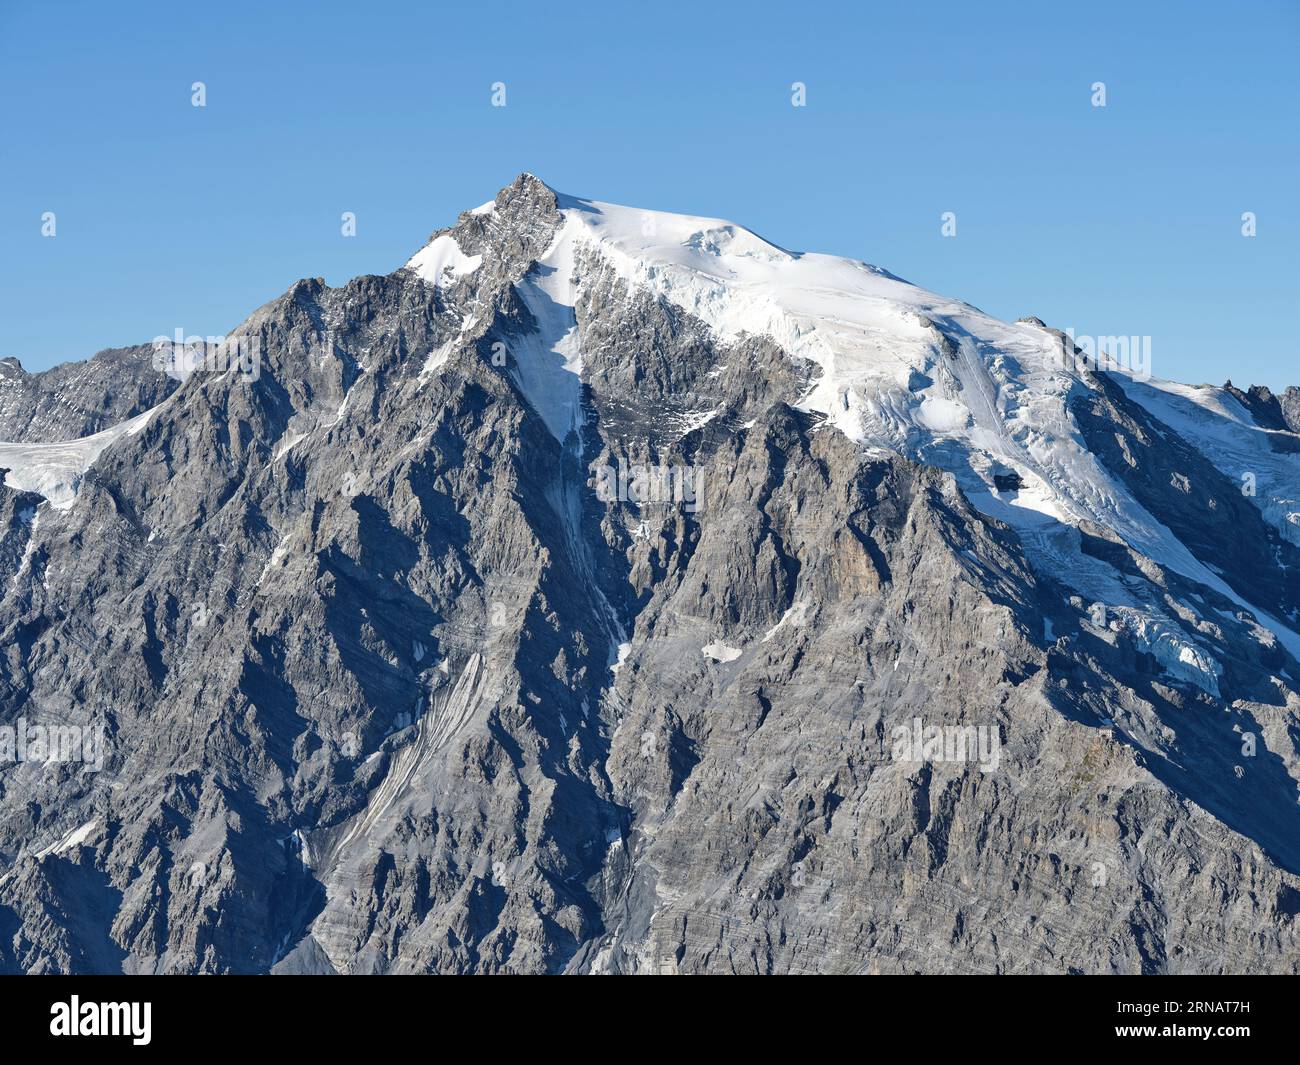 LUFTAUFNAHME. Der Ortler (italienisch) oder Ortler (deutsch), ein 3905 Meter hoher Gipfel im Ortlermassiv. Stilfs, Trentino-Südtirol, Italien. Stockfoto